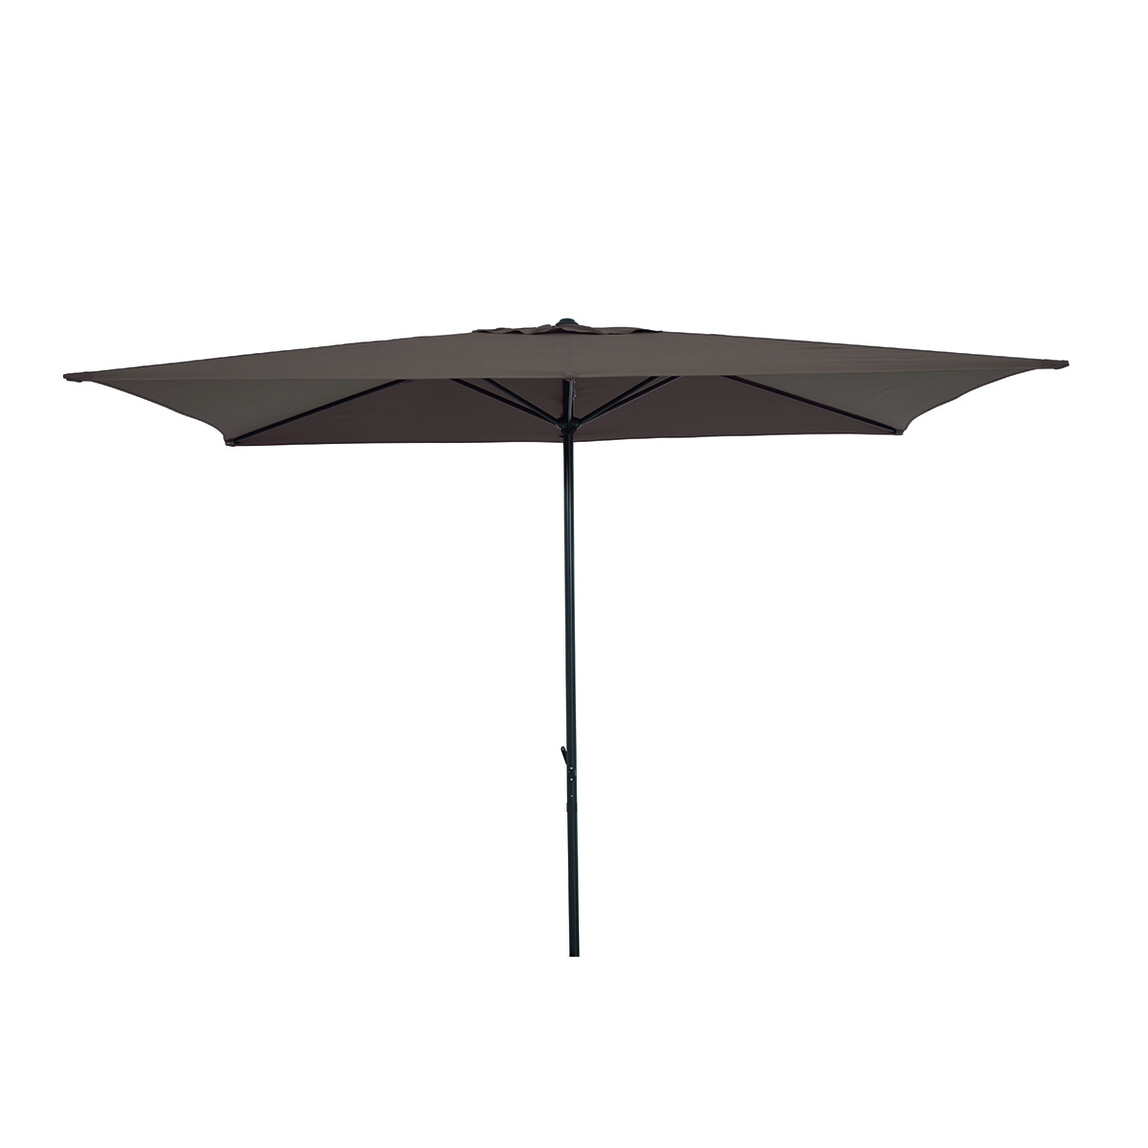    Sunfun Venetien II Şemsiye Gri 200x300 cm  